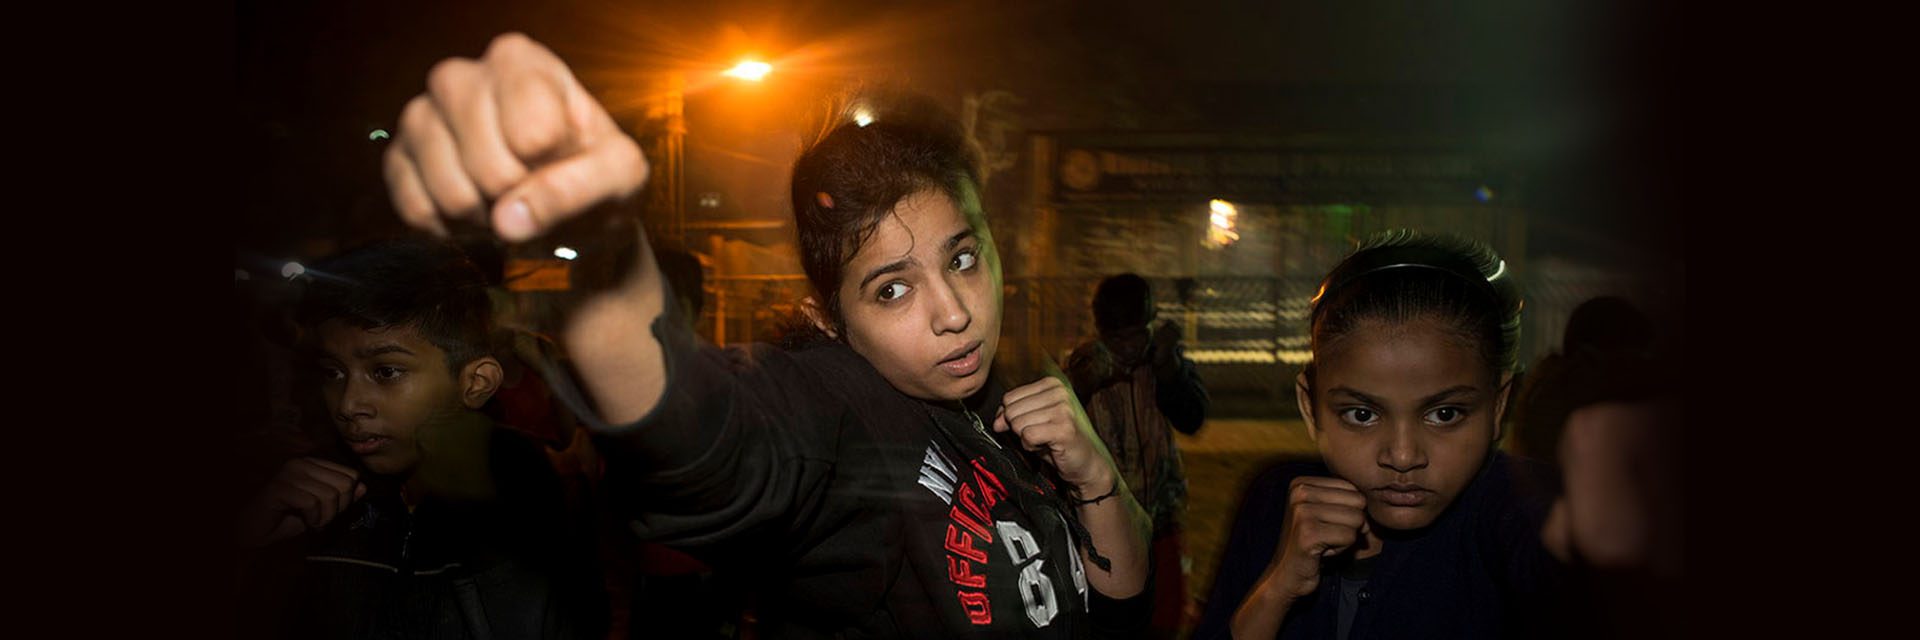 Diese eifrigen Boxerinnen aus Kalkutta boxen ohne Burka und hauen um